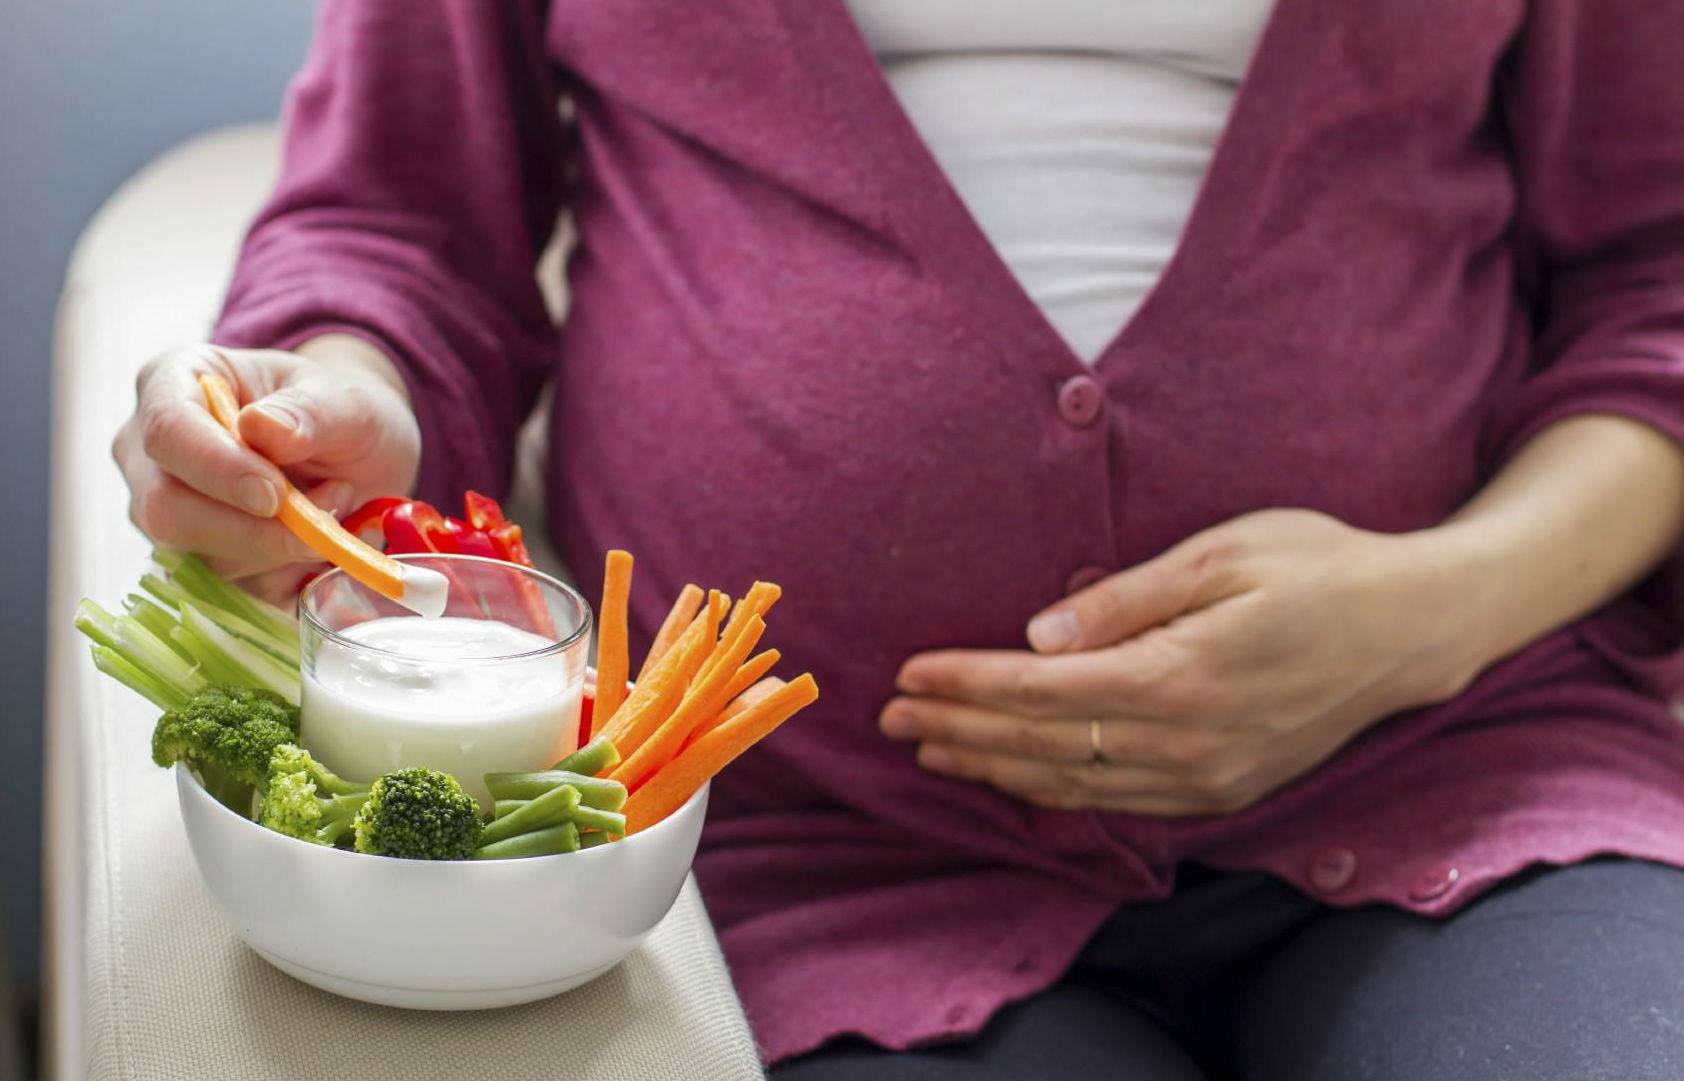 Морковь во время беременности: польза и вред овоща для организма